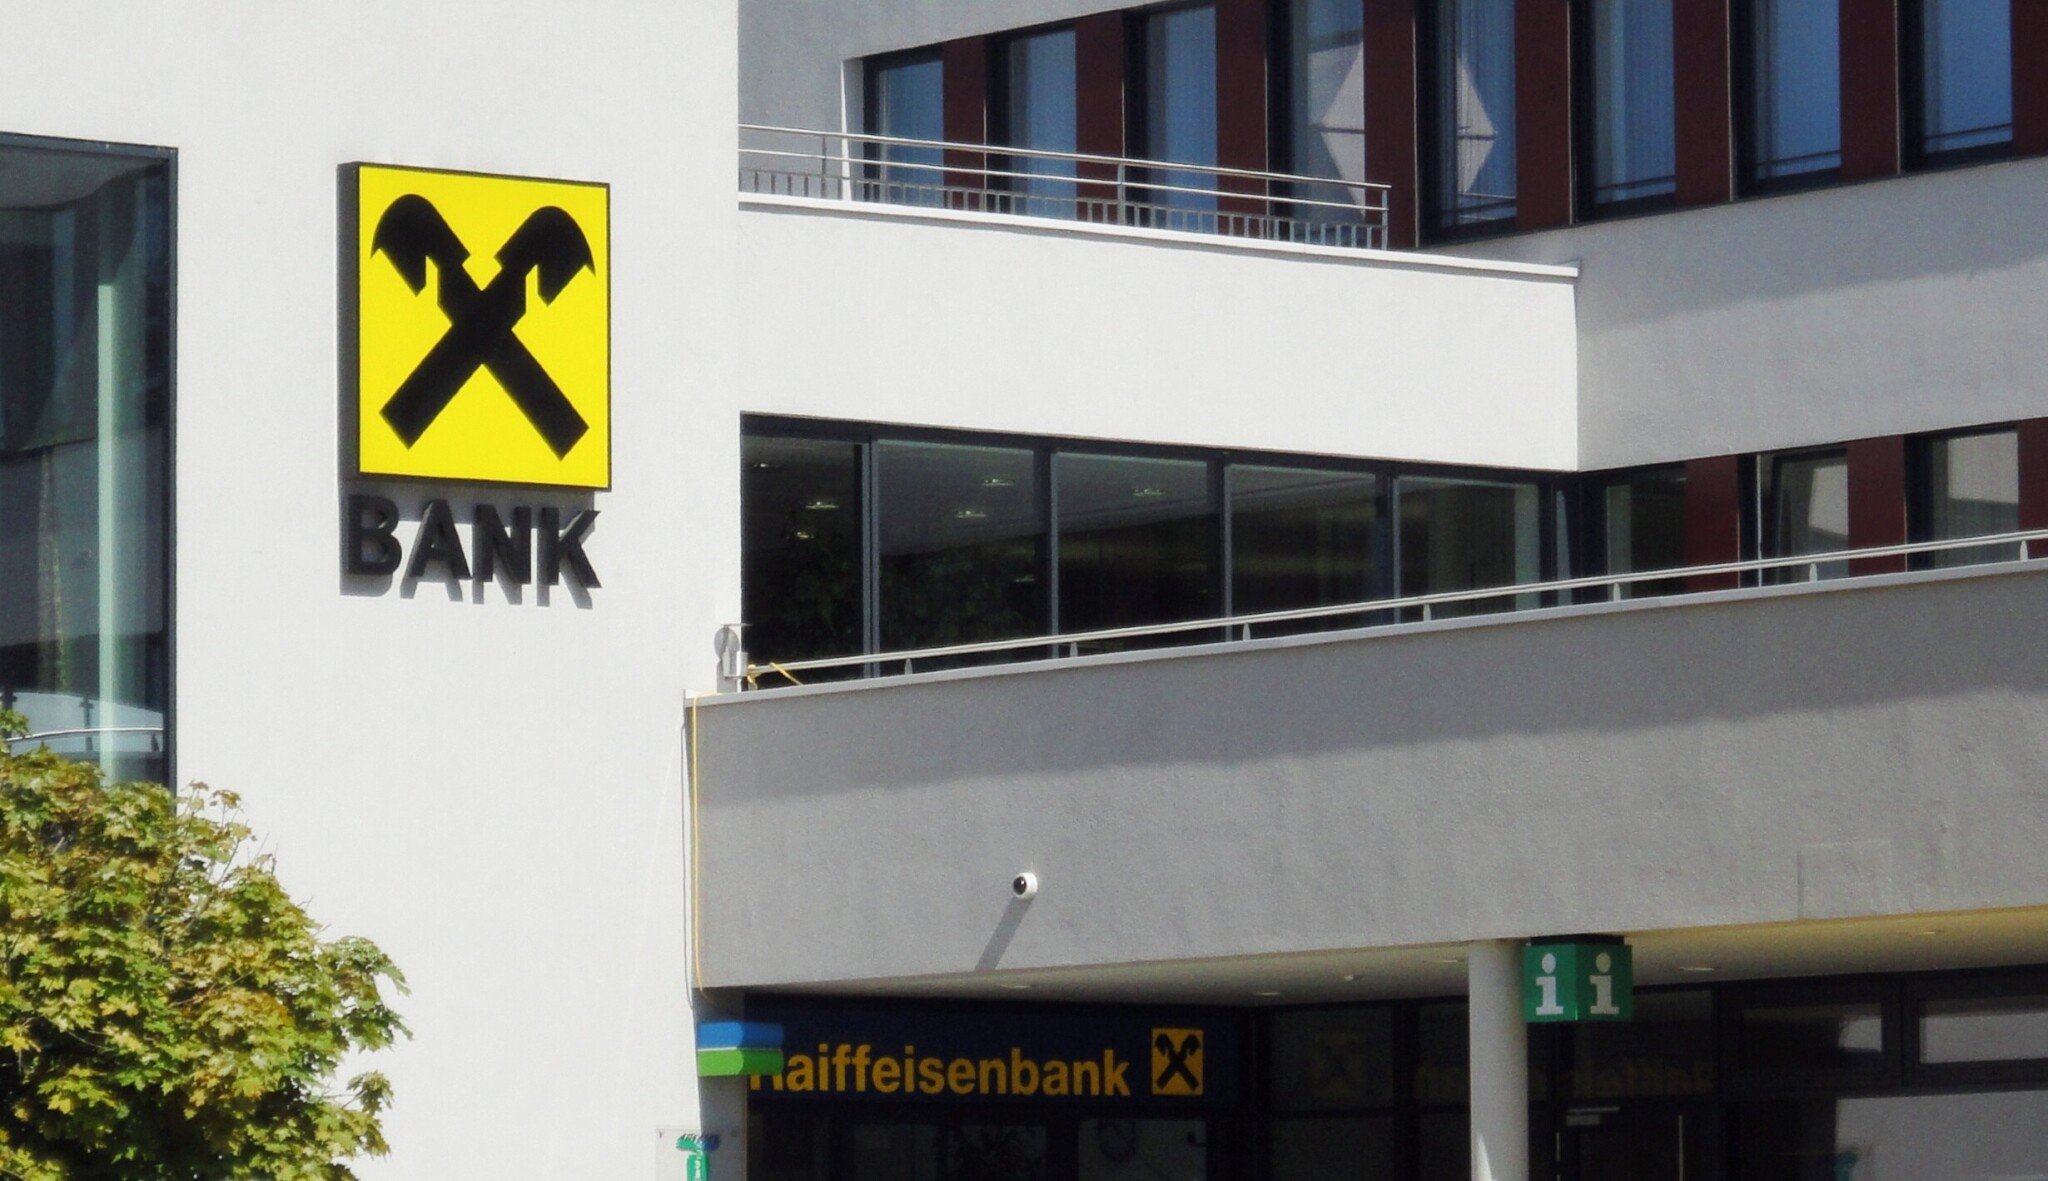 Zisky Raiffeisenbank v prvním čtvrtletí stouply o 62 procent. Rostly i ostatní banky